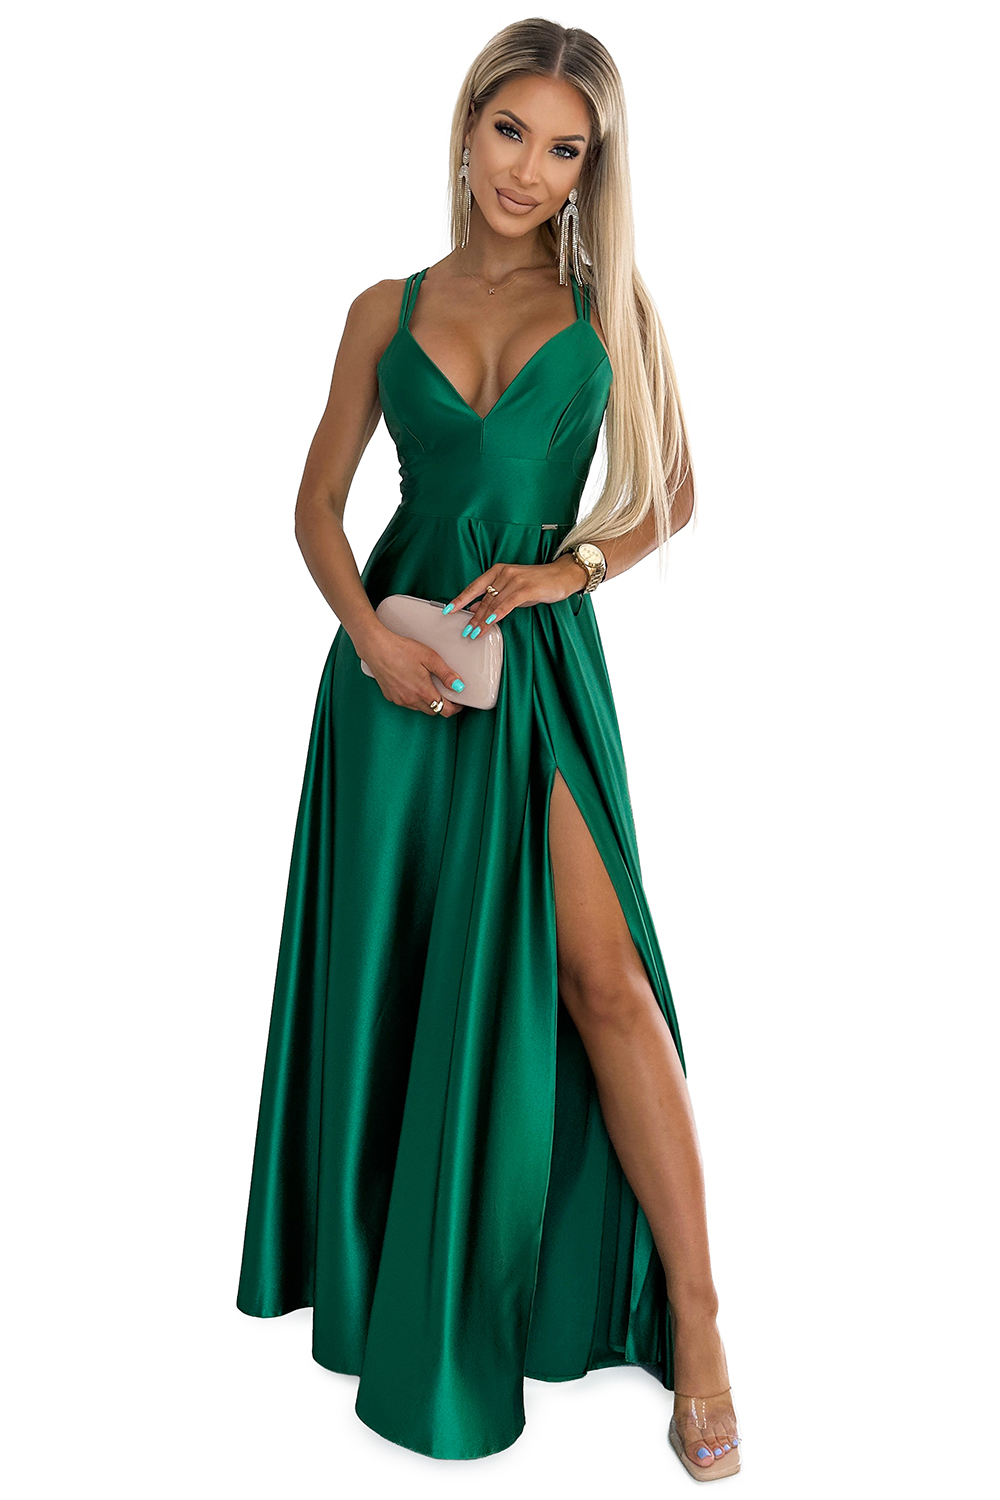 513-1 LUNA elegancka długa satynowa suknia z dekoltem i skrzyżowanymi ramiączkami - ZIELEŃ BUTELKOWA